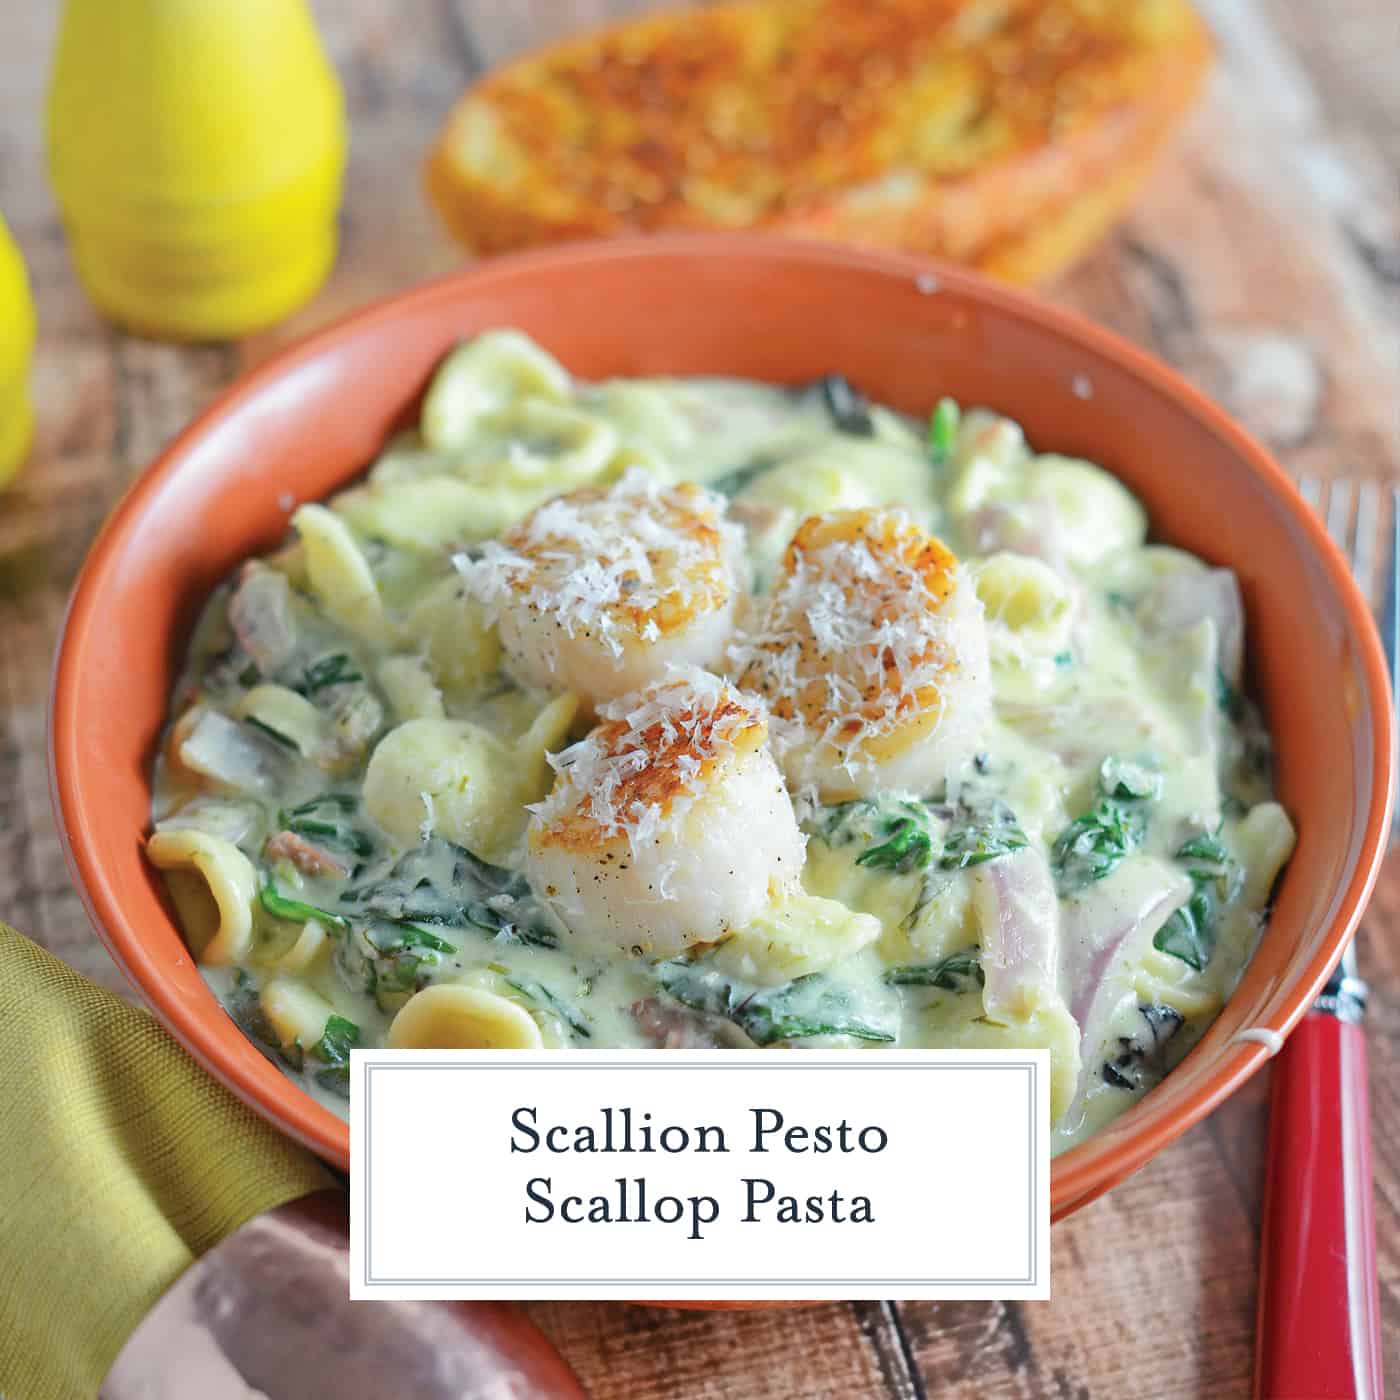 Scallion Pesto Scallop Pasta is a restaurant quality dish, creamy pasta sauce with garlic, Swiss chard, prosciutto and seared scallops. #pastarecipes #scalloprecipes www.savoryexperiments.com